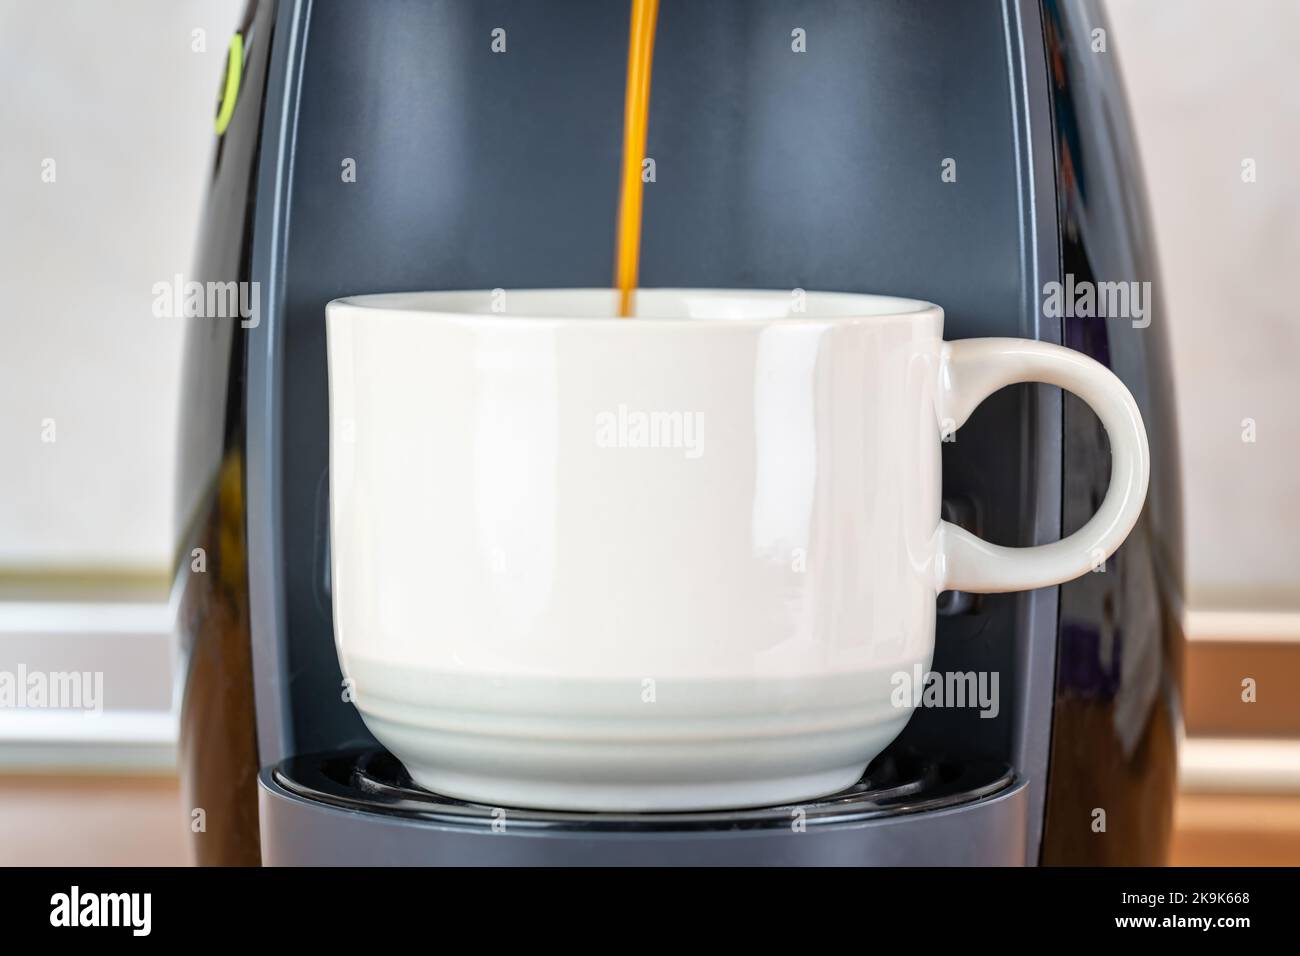 Máquina para hacer Café Duo  Tazas ceramica, Cafe, Cafetera americana